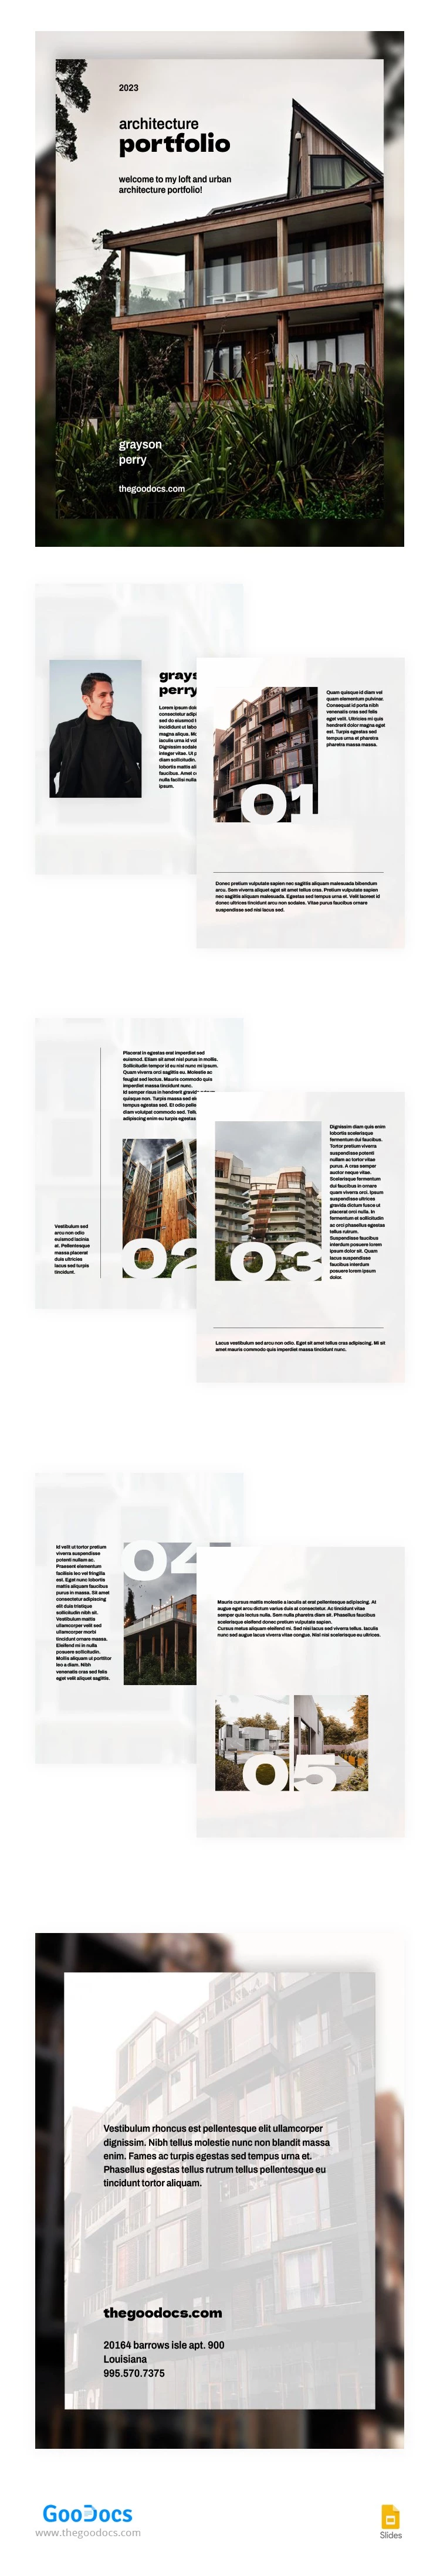 Portfólio de Arquitetura Urbana - free Google Docs Template - 10066170